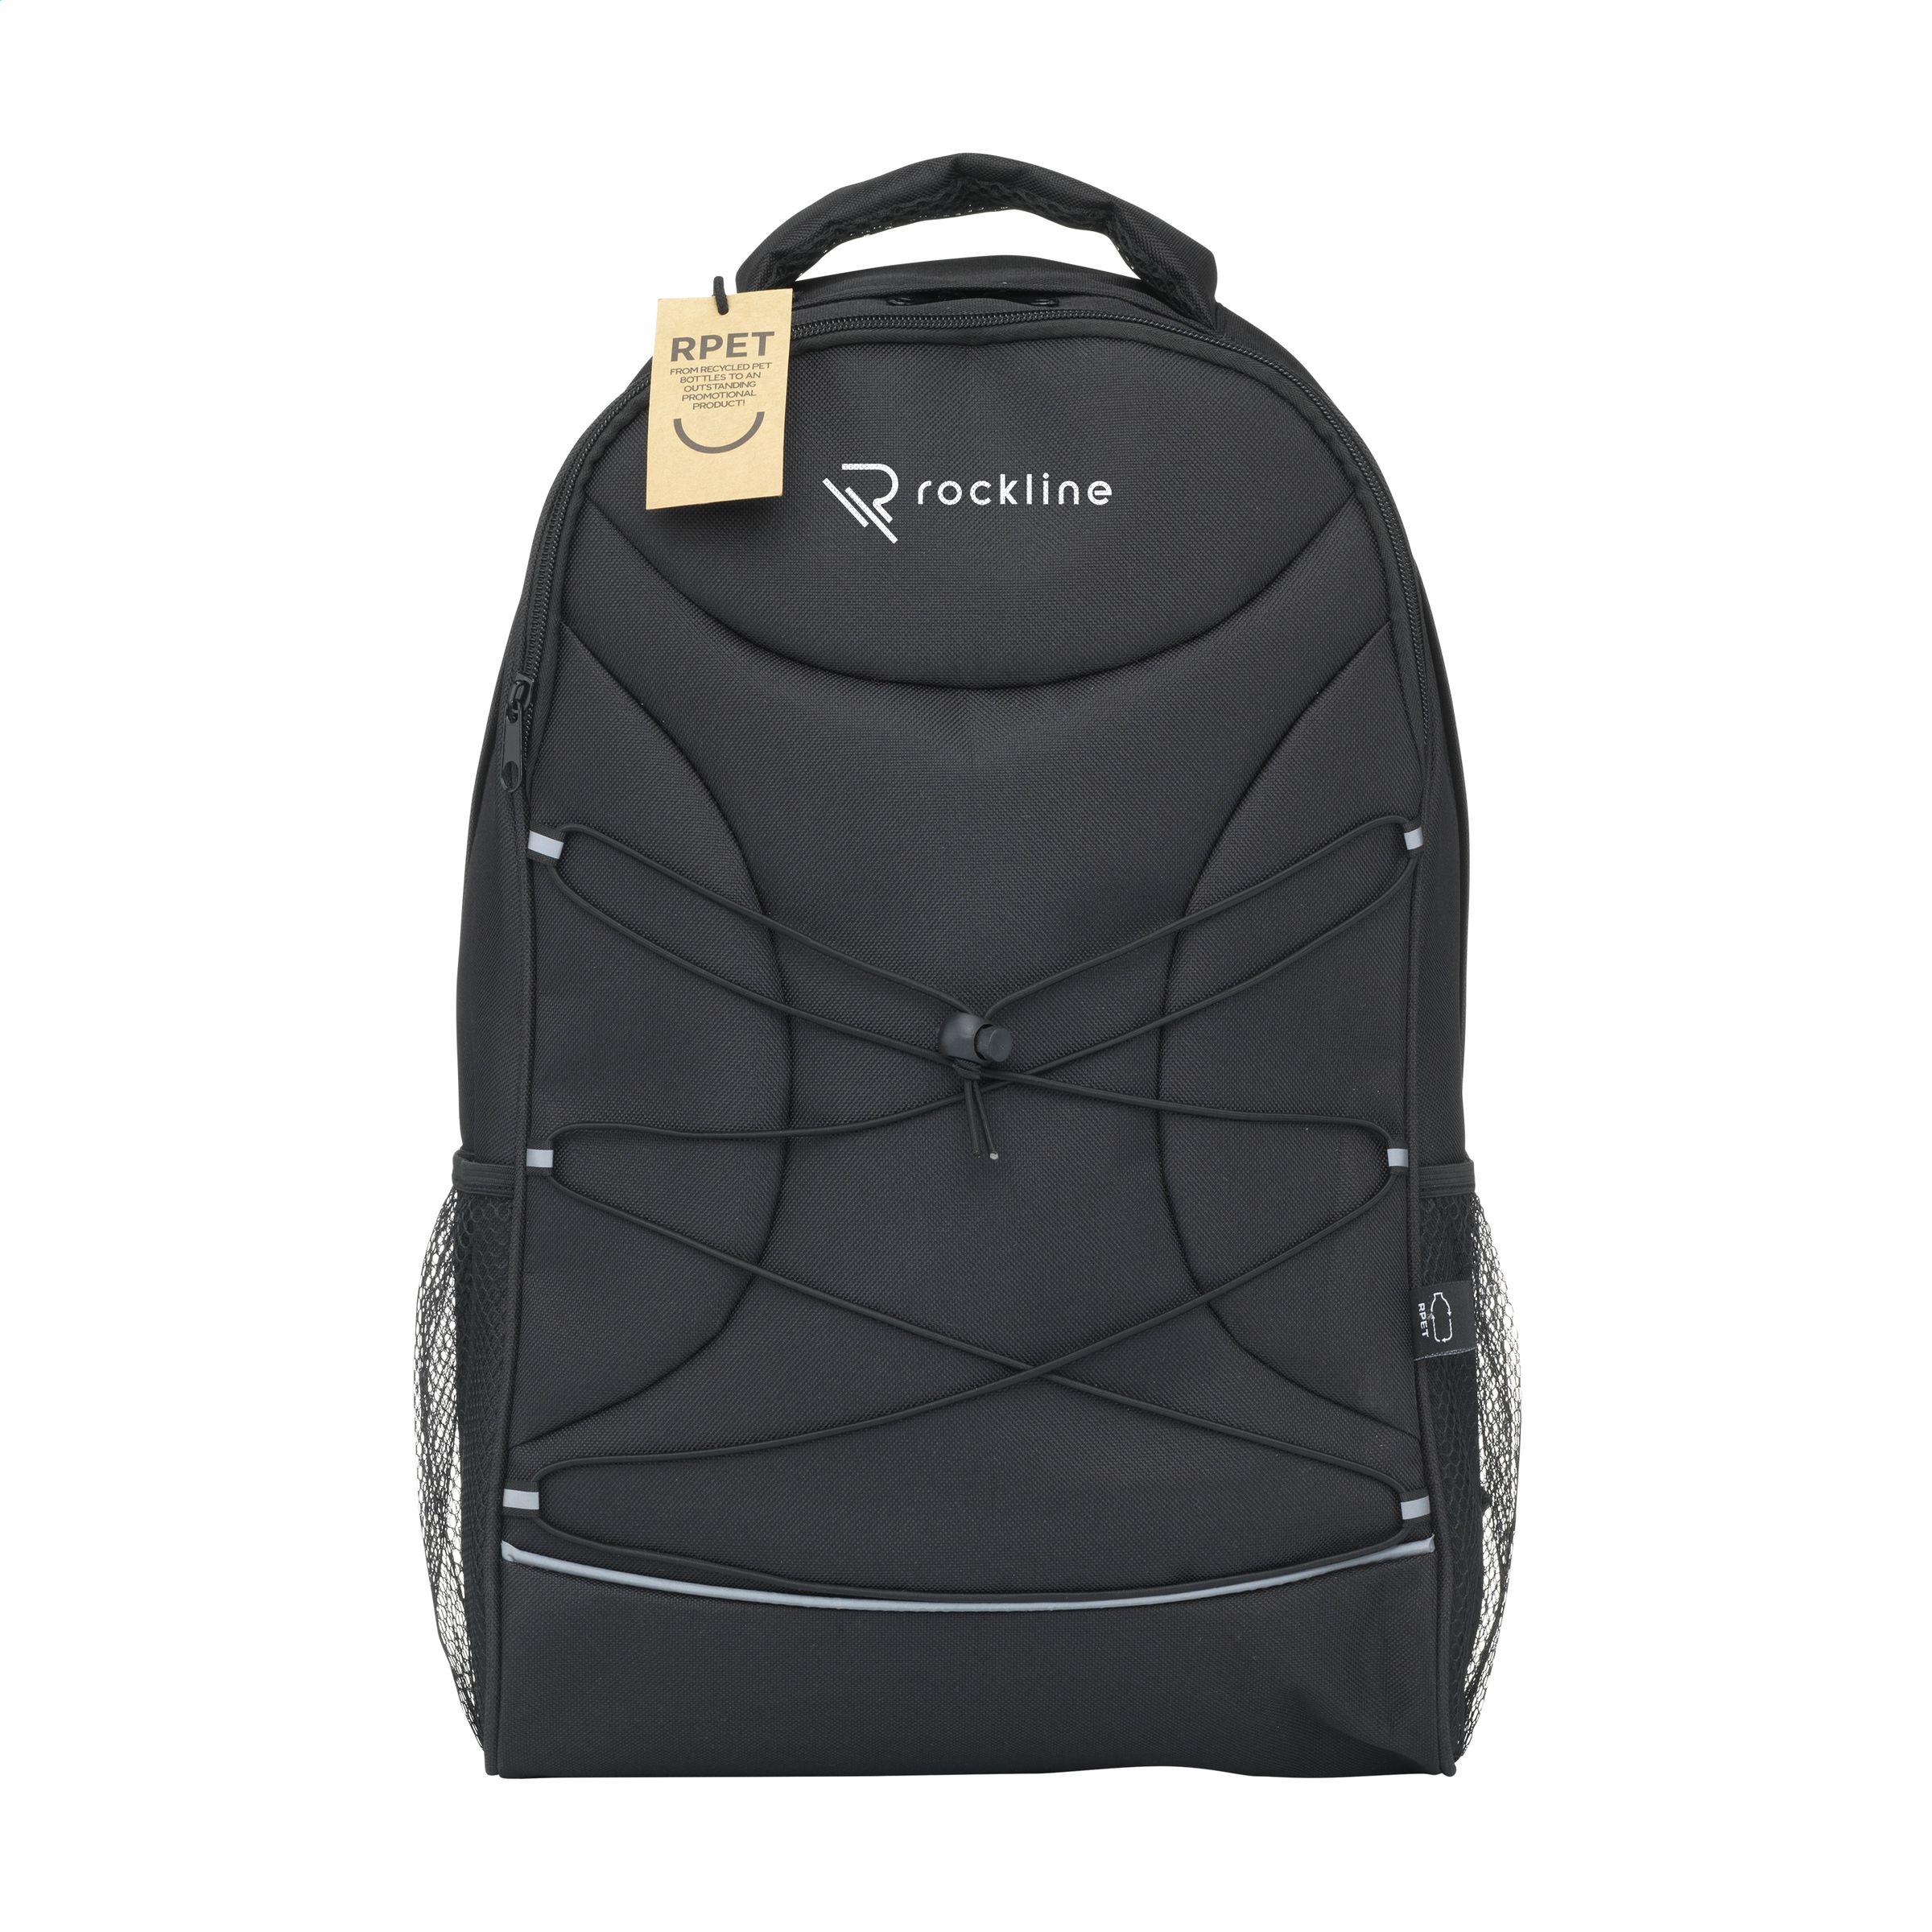 Flashline RPET Laptop Backpack sac à dos - Zaprinta France